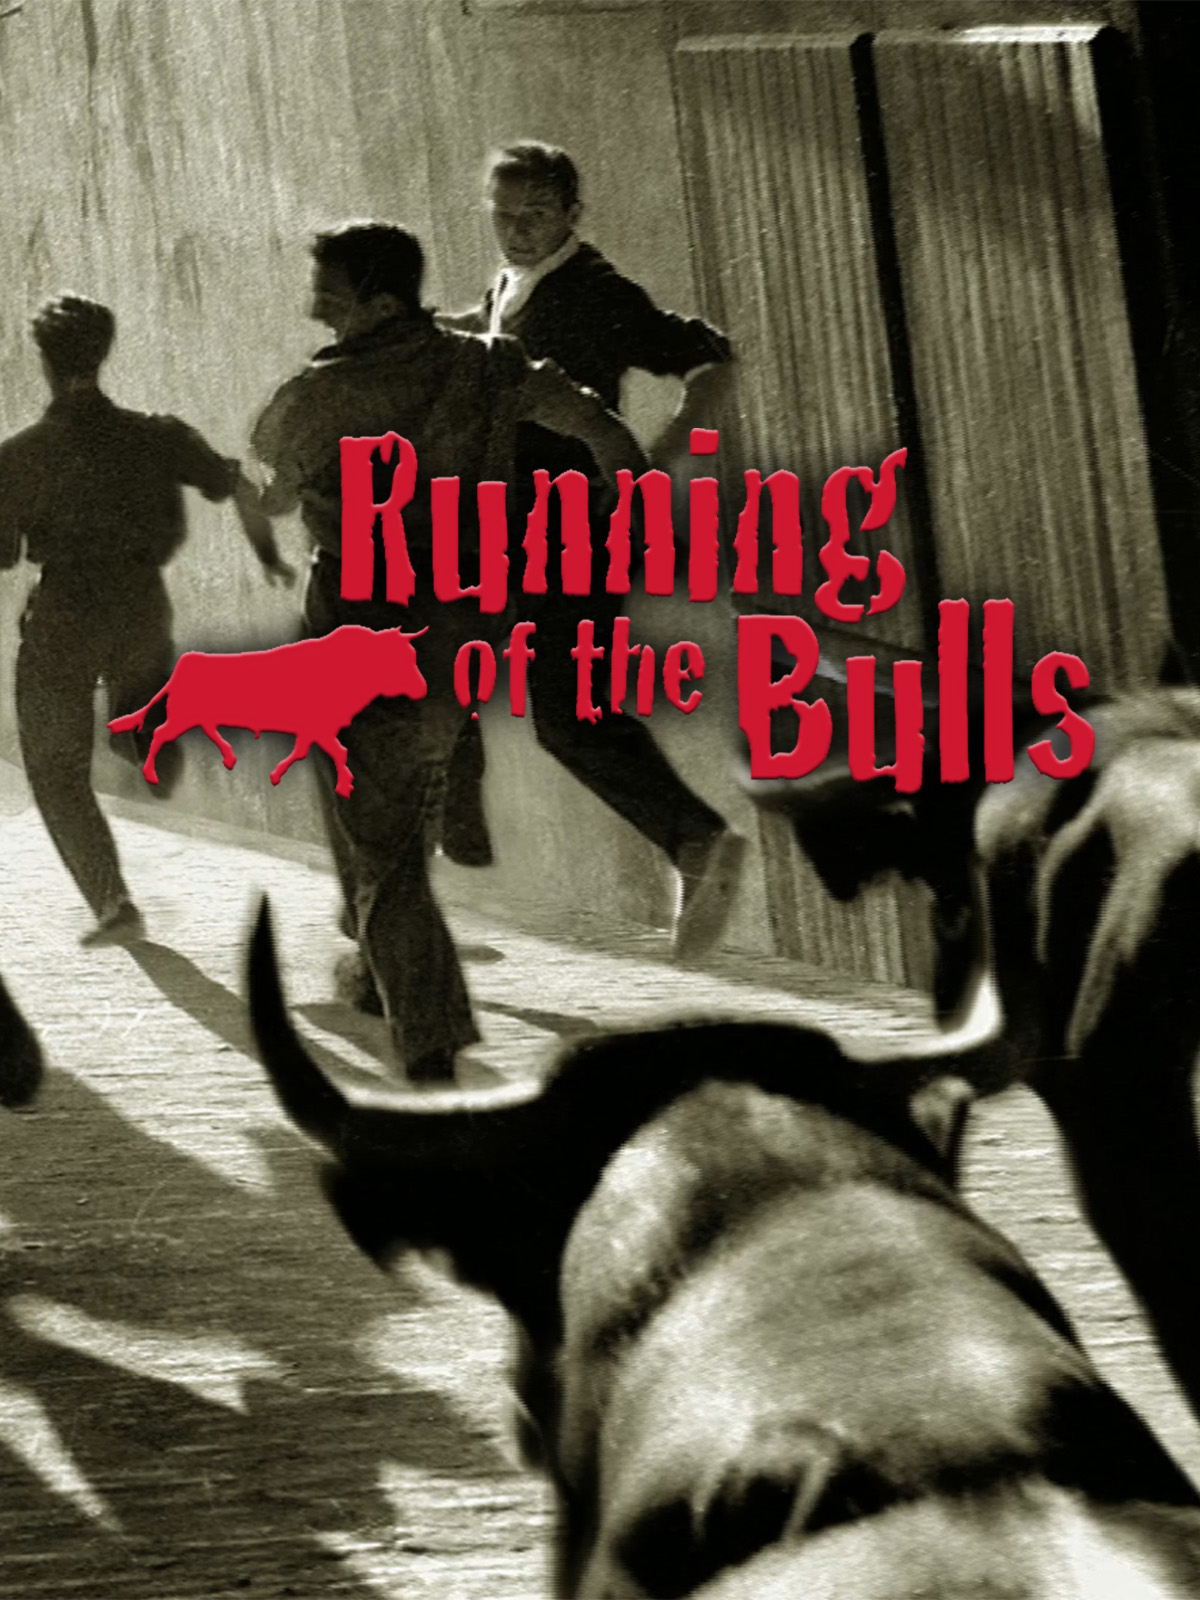 Encierro 3D: Bull Running in PamplonaAka Running of the Bulls